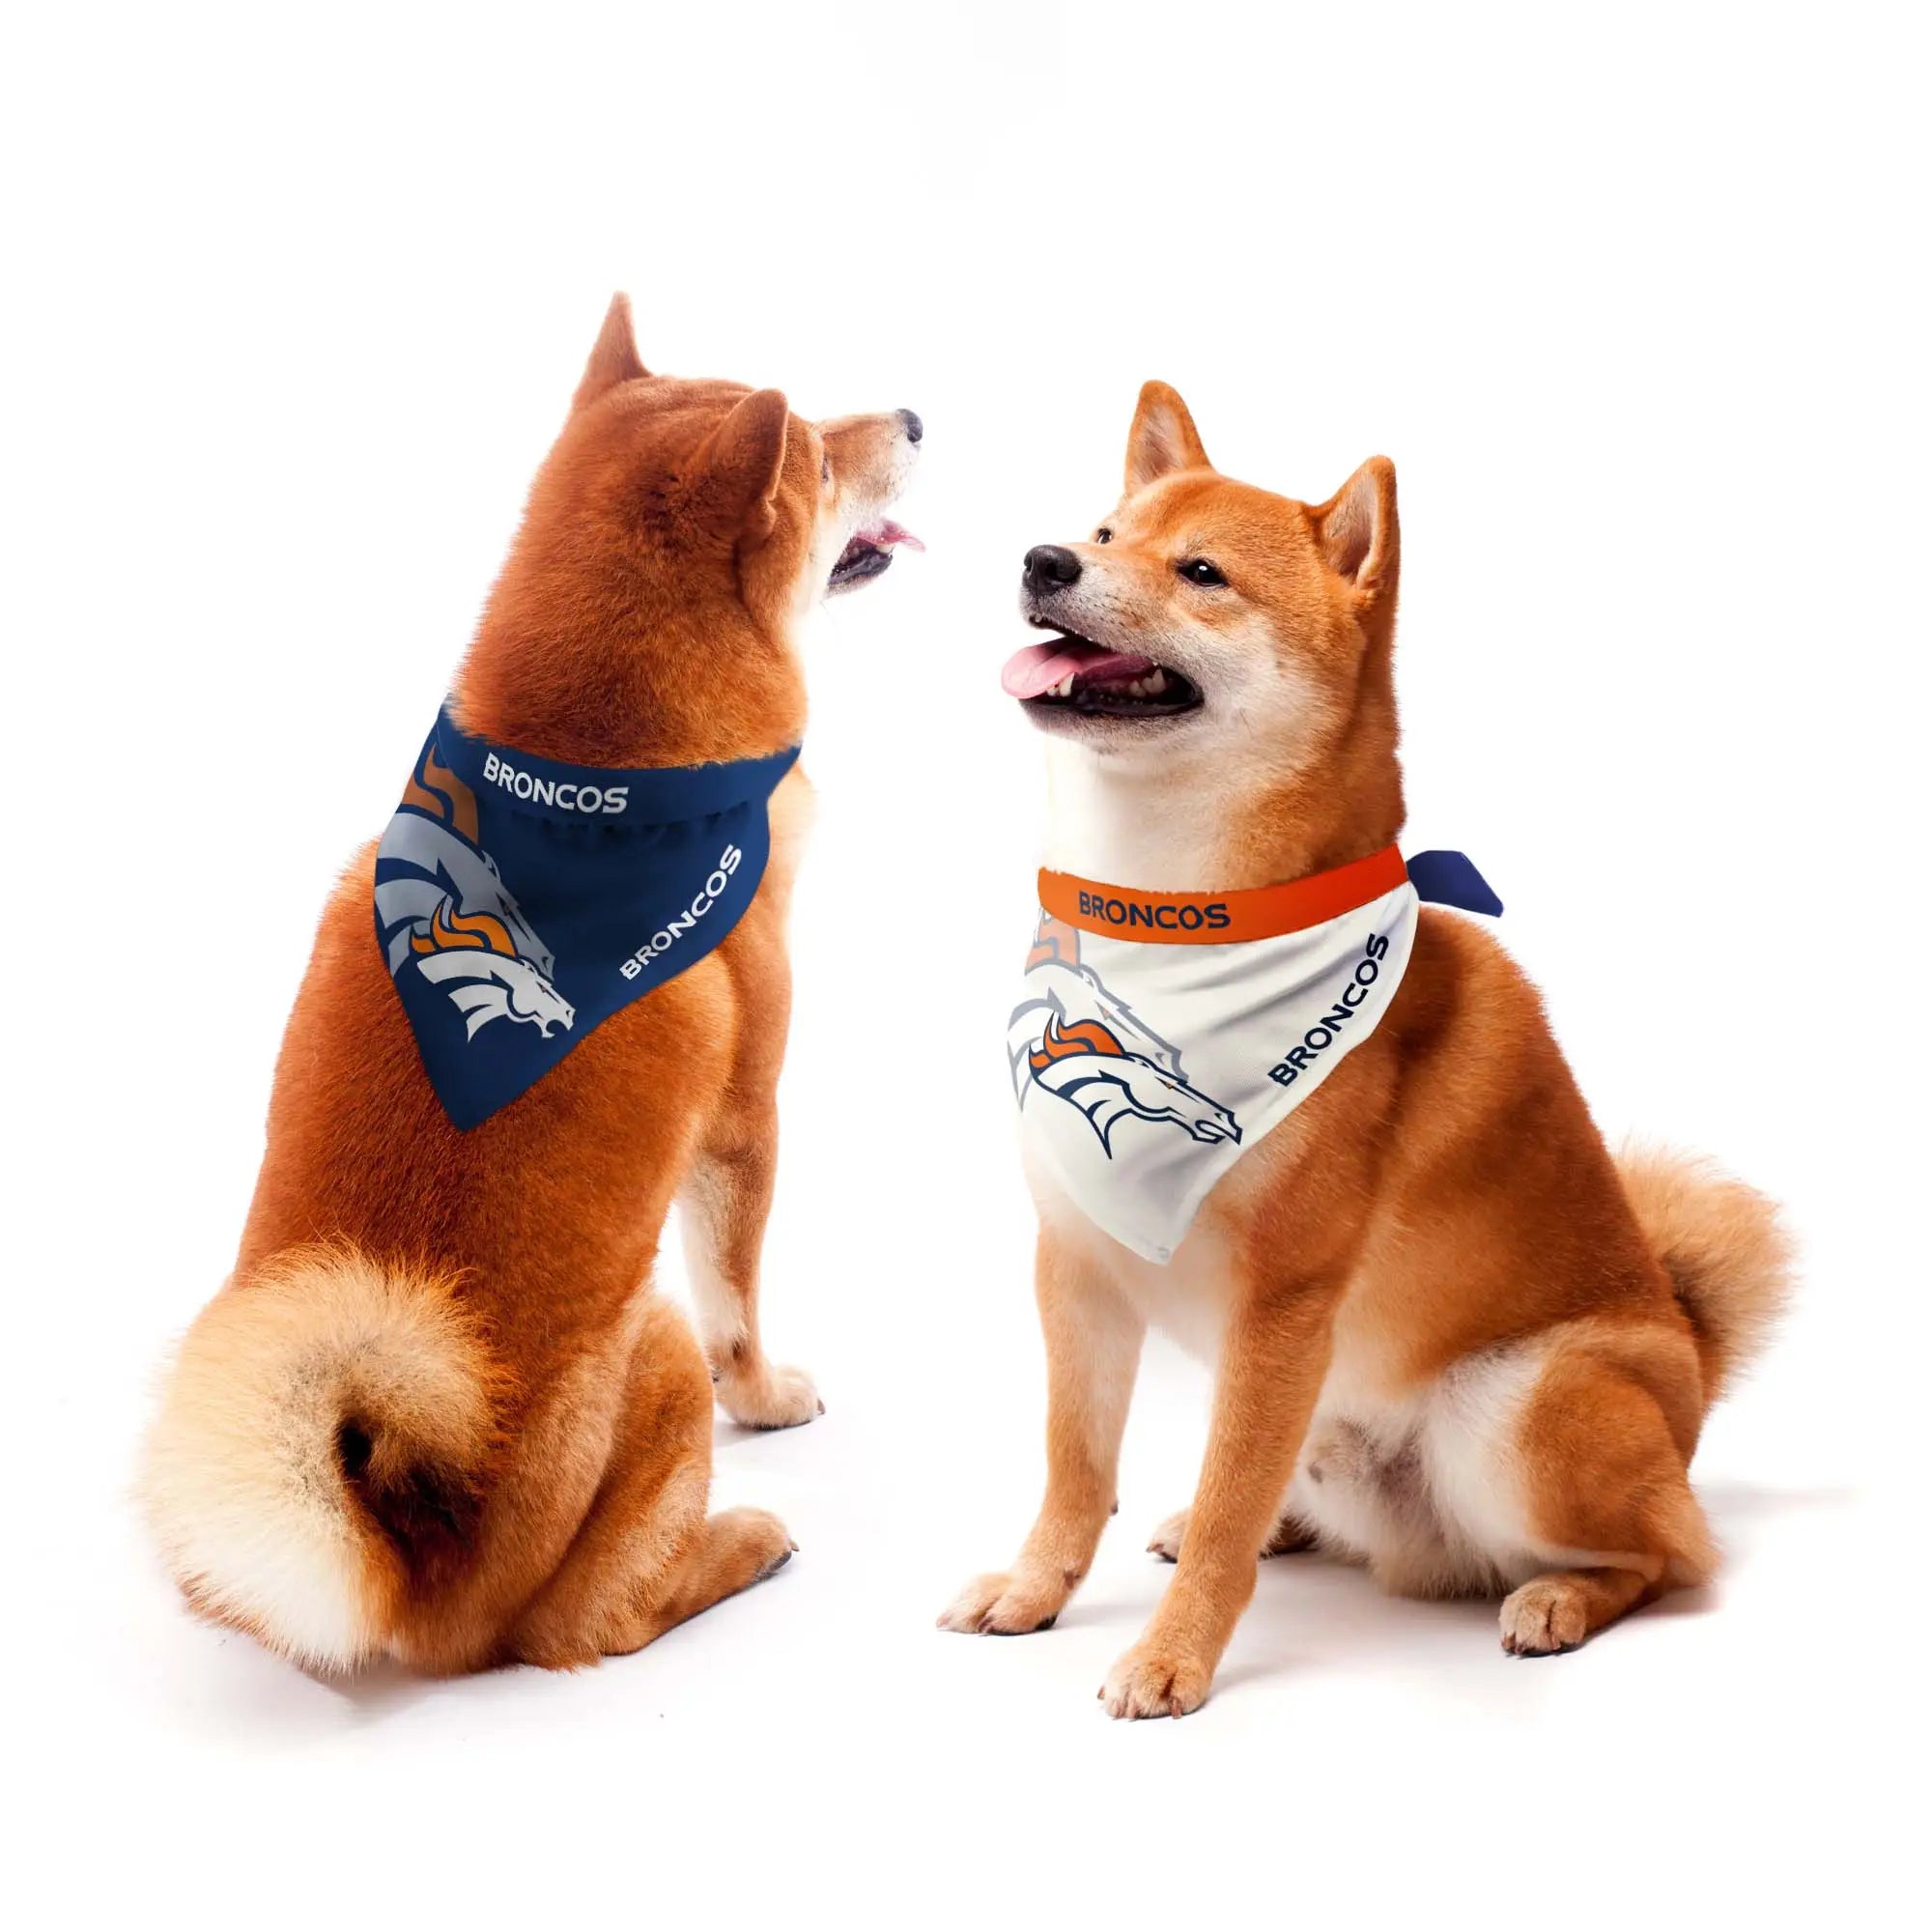 Denver Broncos licensed pet jersey